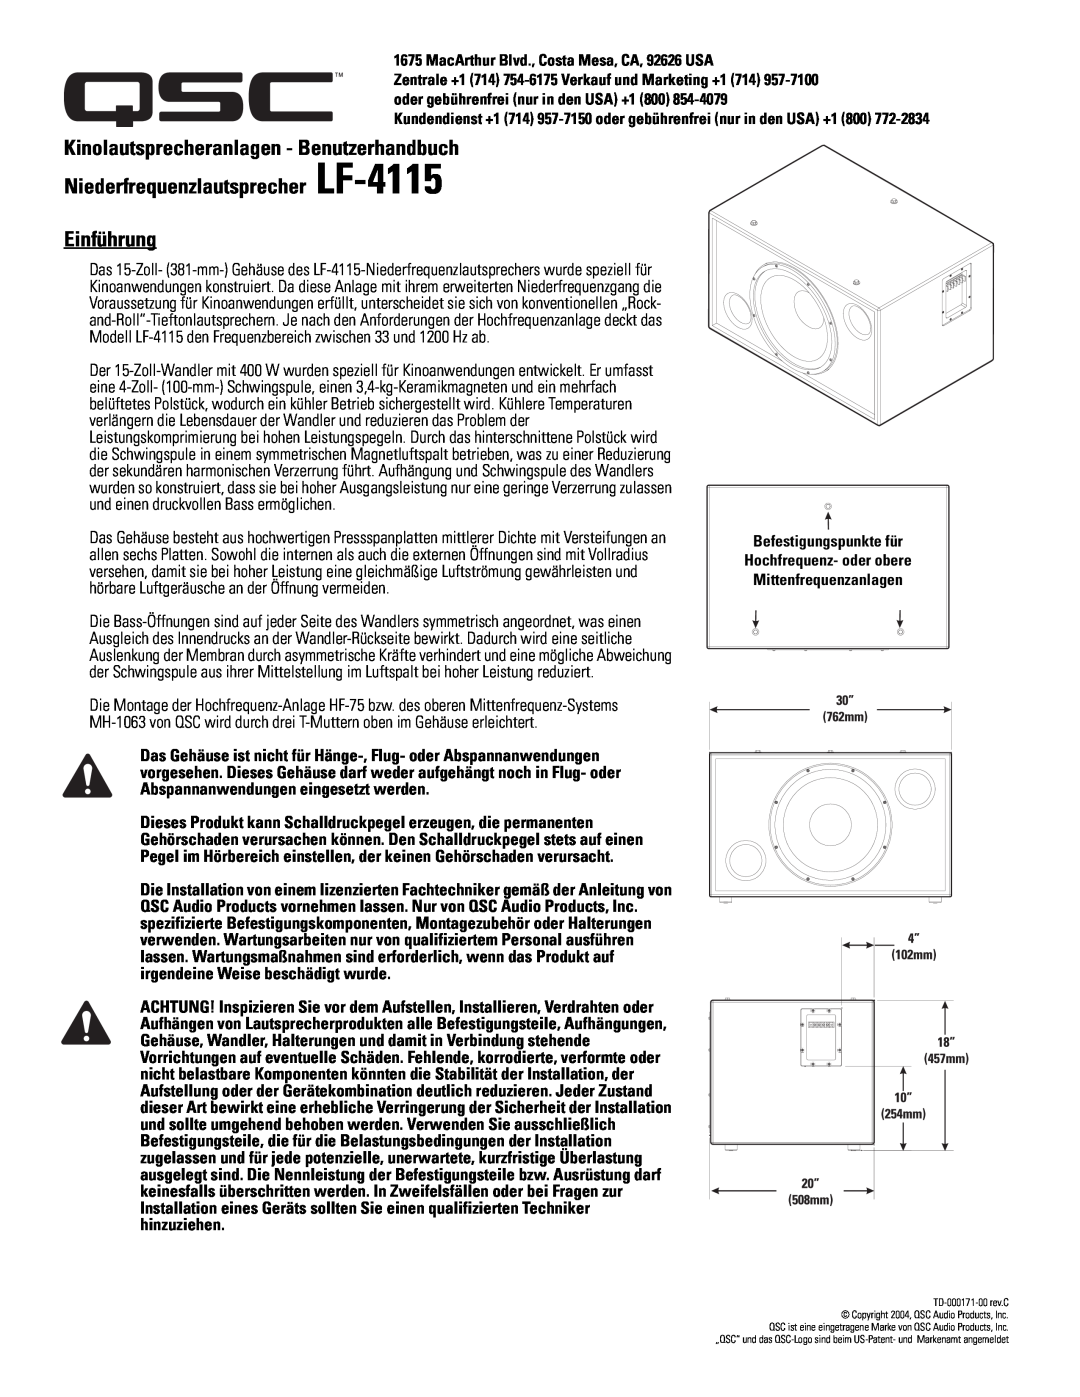 QSC Audio user manual Kinolautsprecheranlagen - Benutzerhandbuch, Niederfrequenzlautsprecher LF-4115 Einführung 